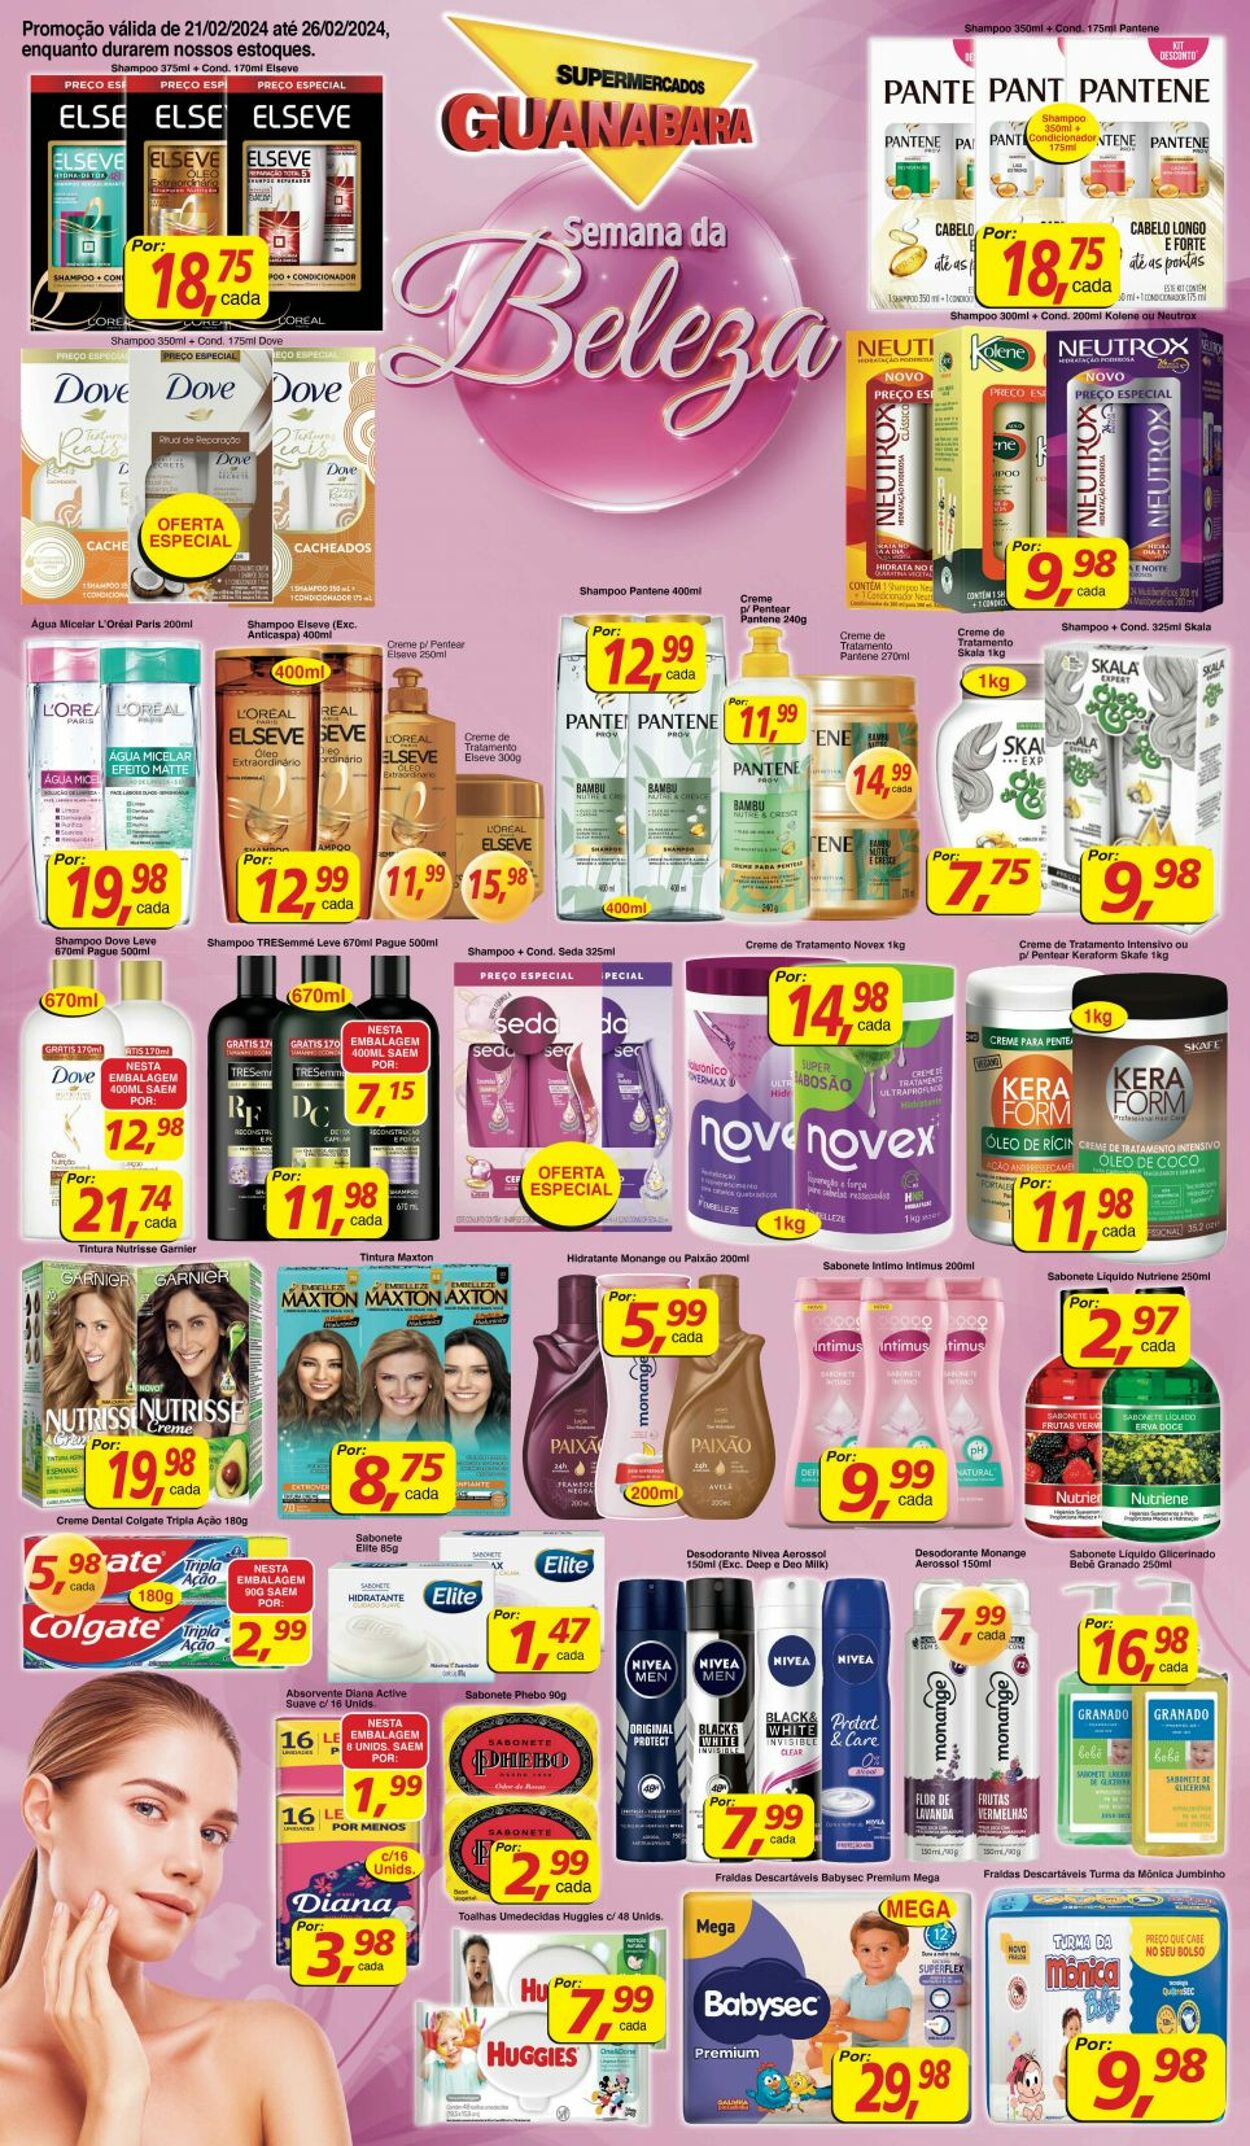 Folheto Supermercados Guanabara 21.02.2024 - 26.02.2024